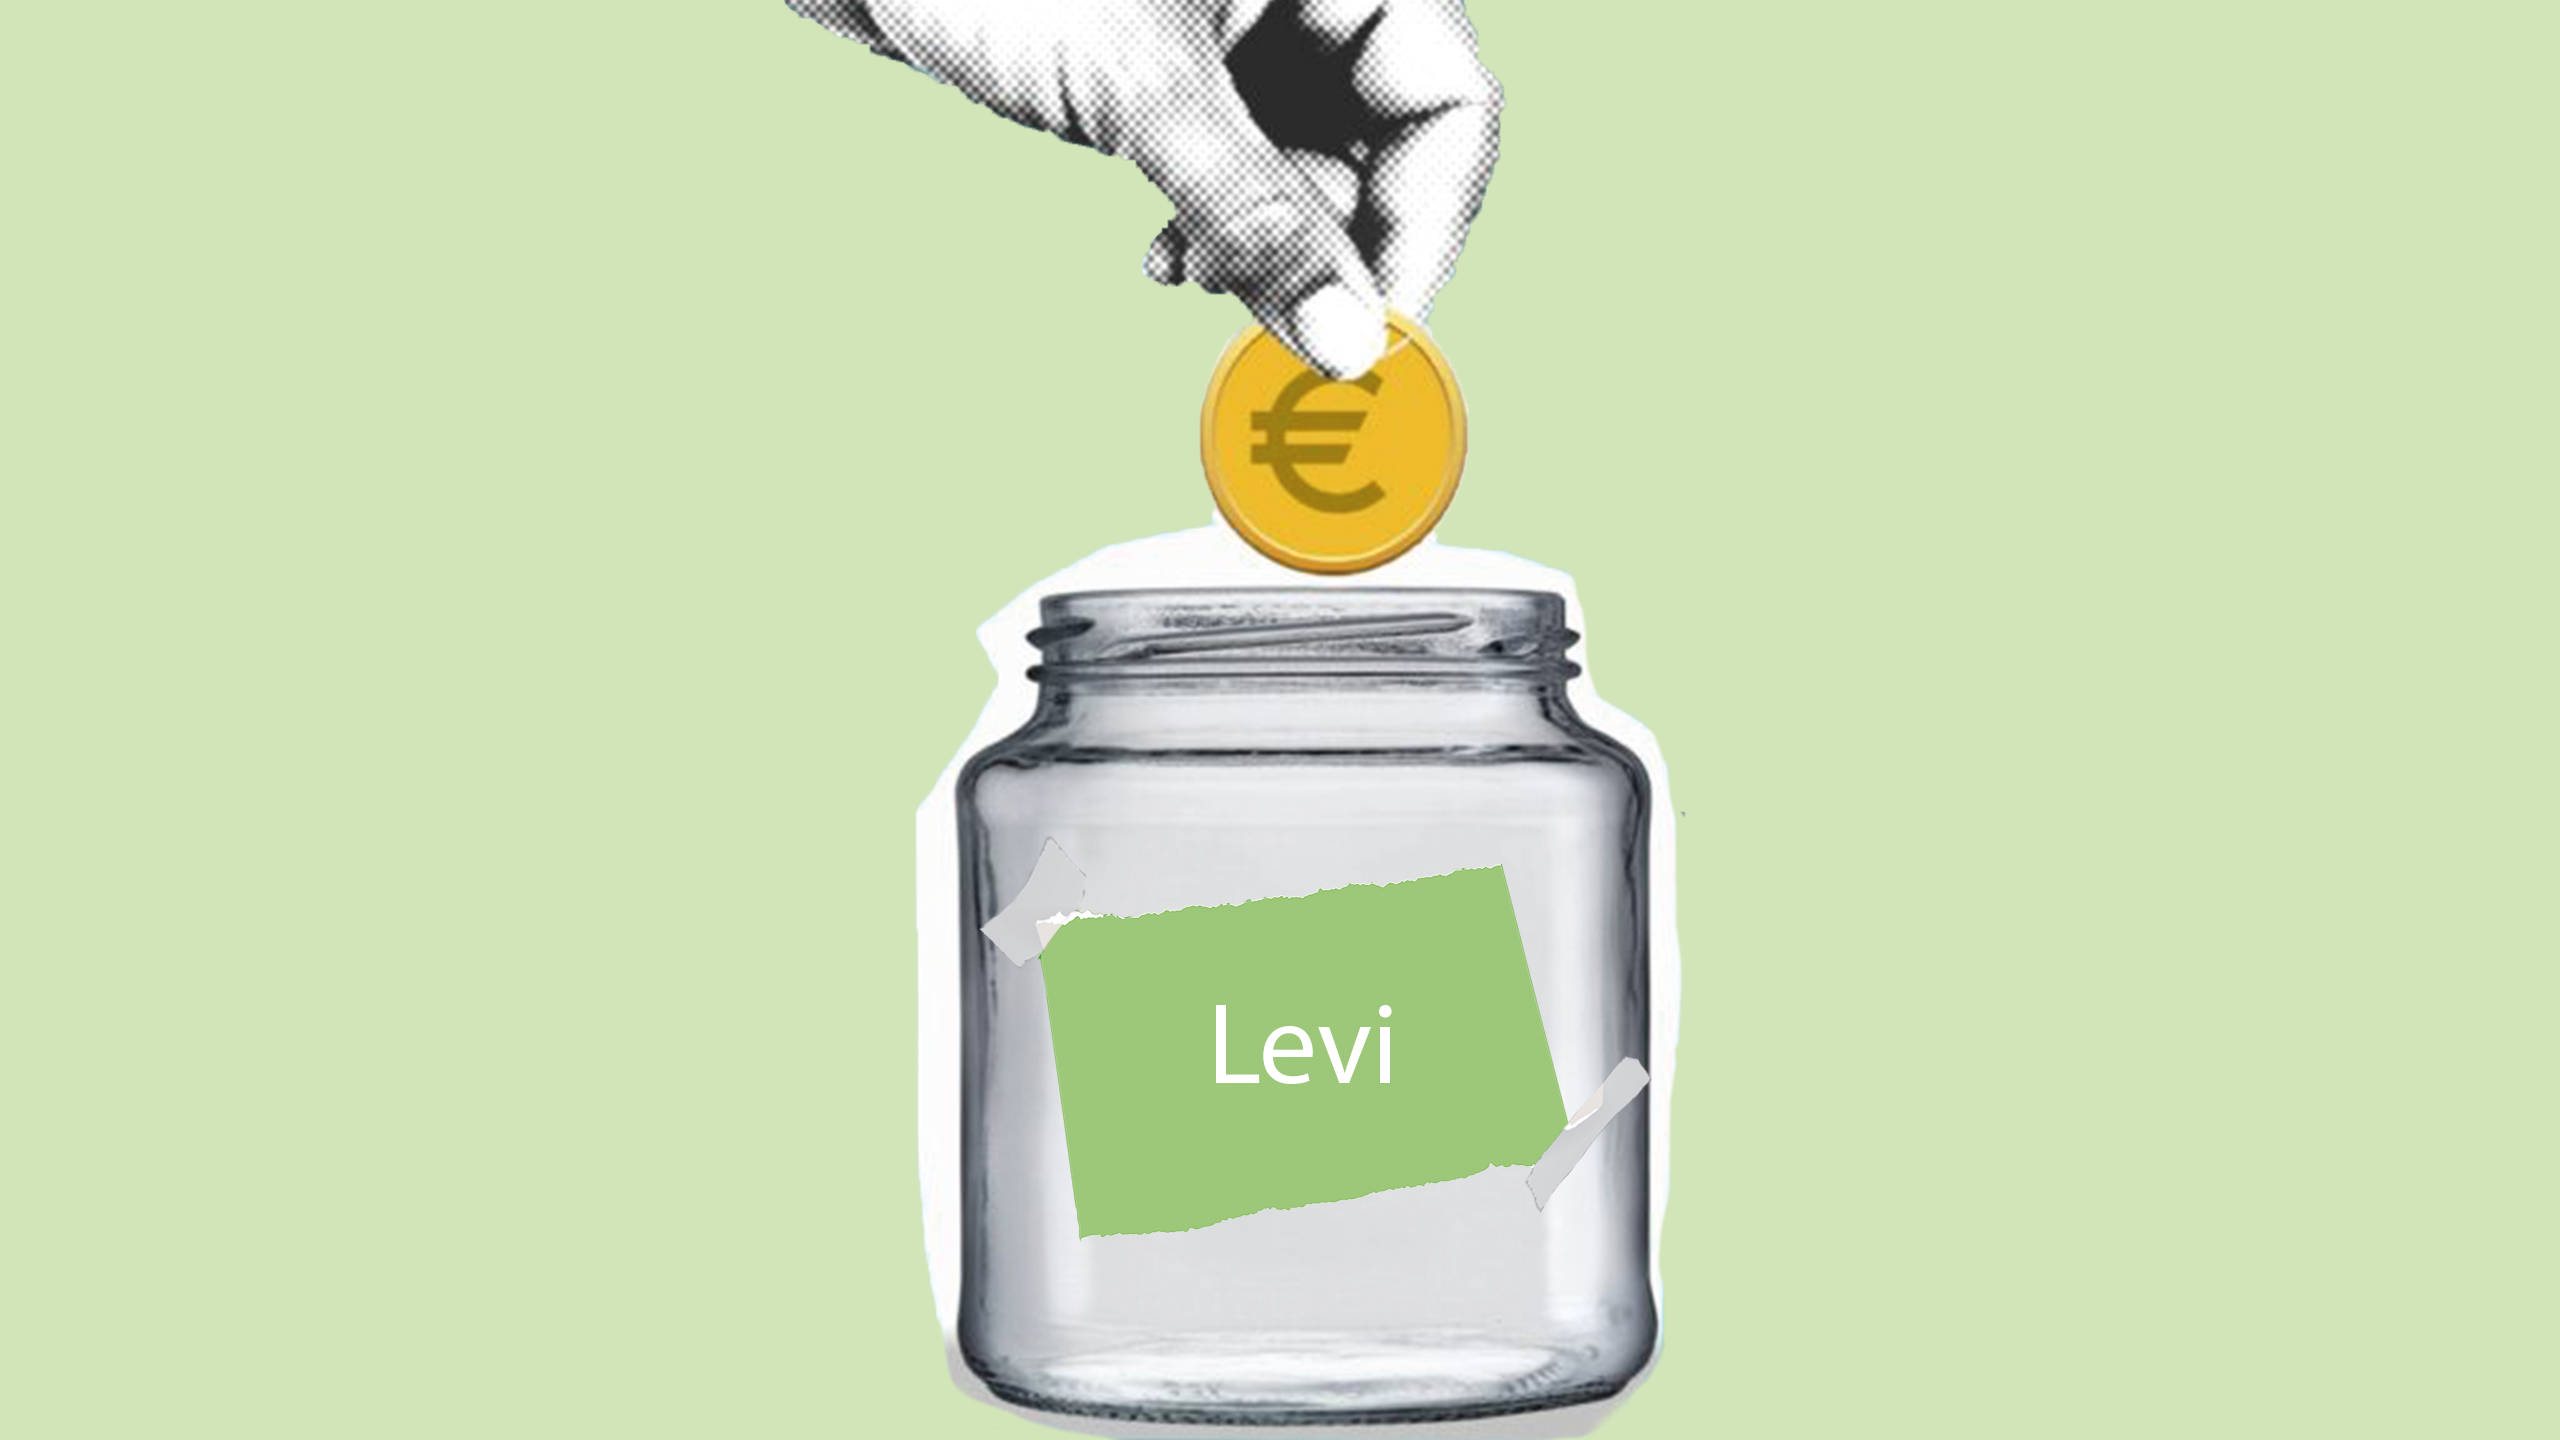 De Spaarrekening van Levi